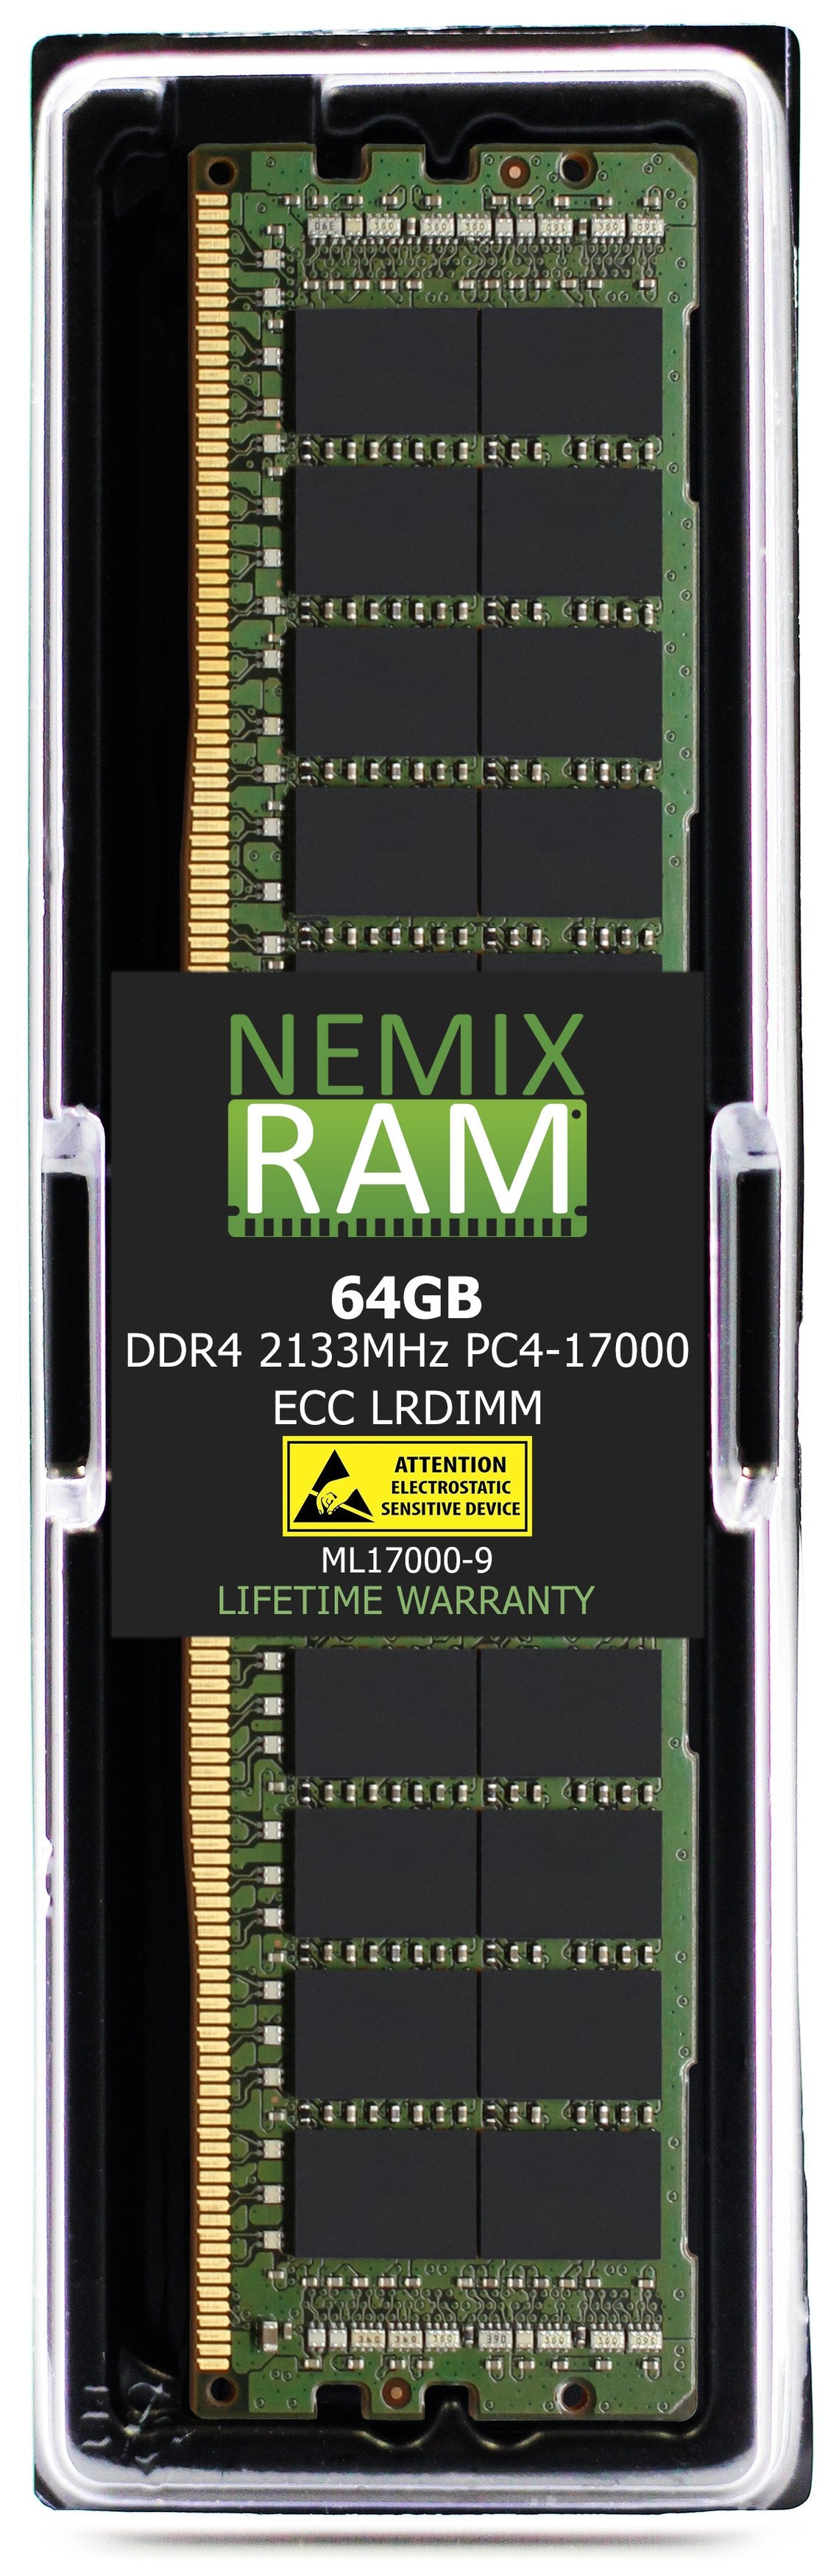 64GB DDR4 2133MHZ PC4-17000 LRDIMM Compatible with Supermicro MEM-DR464L-HL01-LR21